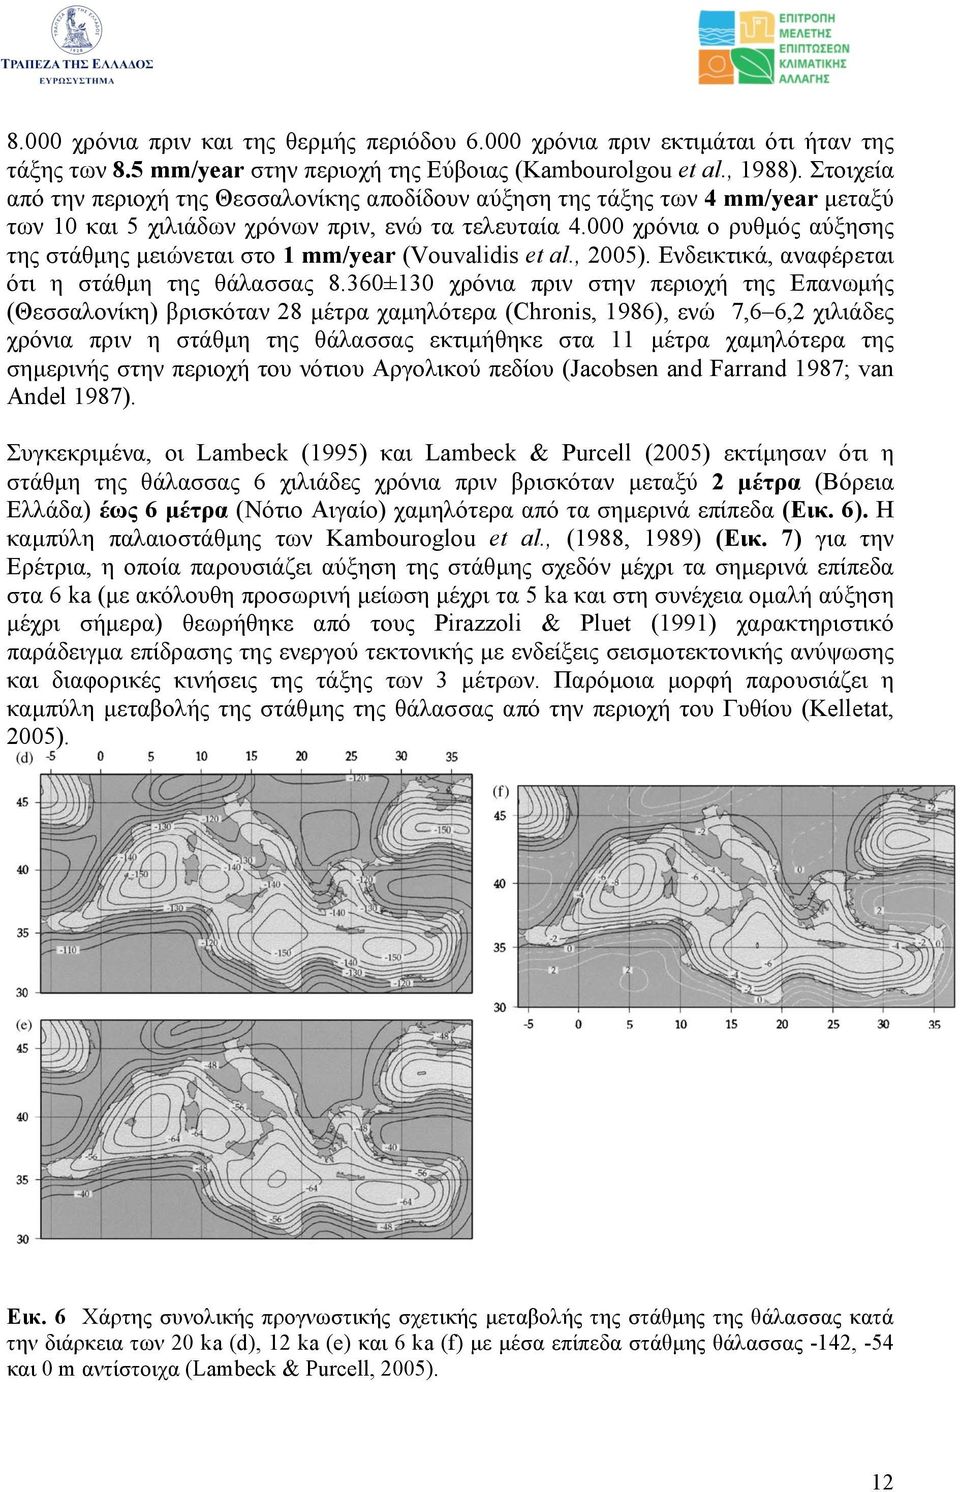 000 χρόνια ο ρυθµός αύξησης της στάθµης µειώνεται στο 1 mm/year (Vouvalidis et al., 2005). Ενδεικτικά, αναφέρεται ότι η στάθµη της θάλασσας 8.